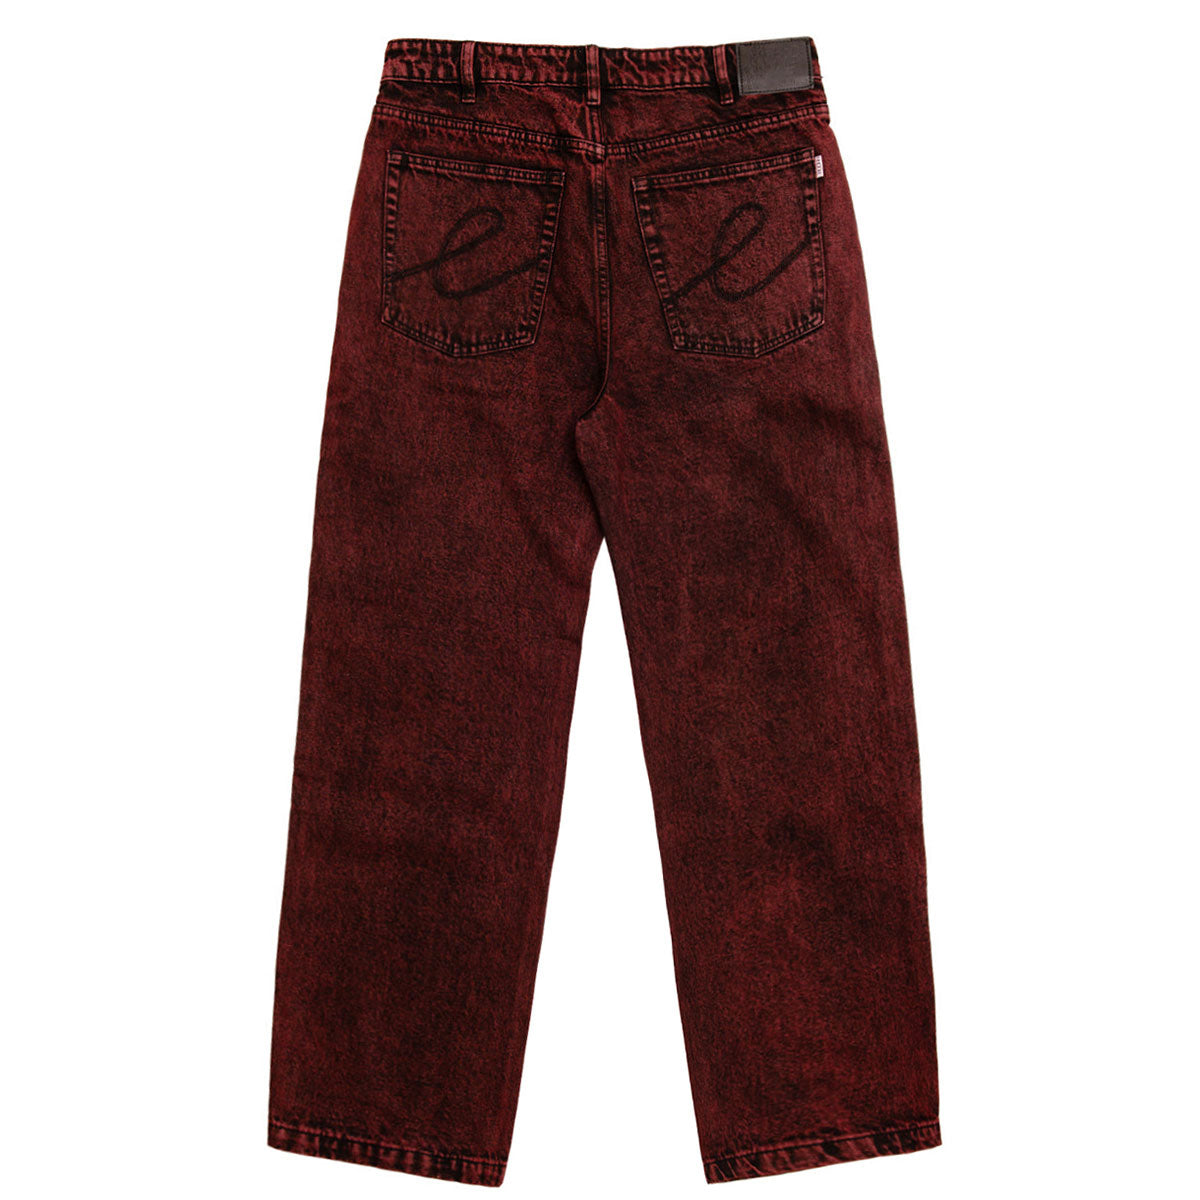 Hoddle 16o Denim Ranger Jeans - Red Wash image 2